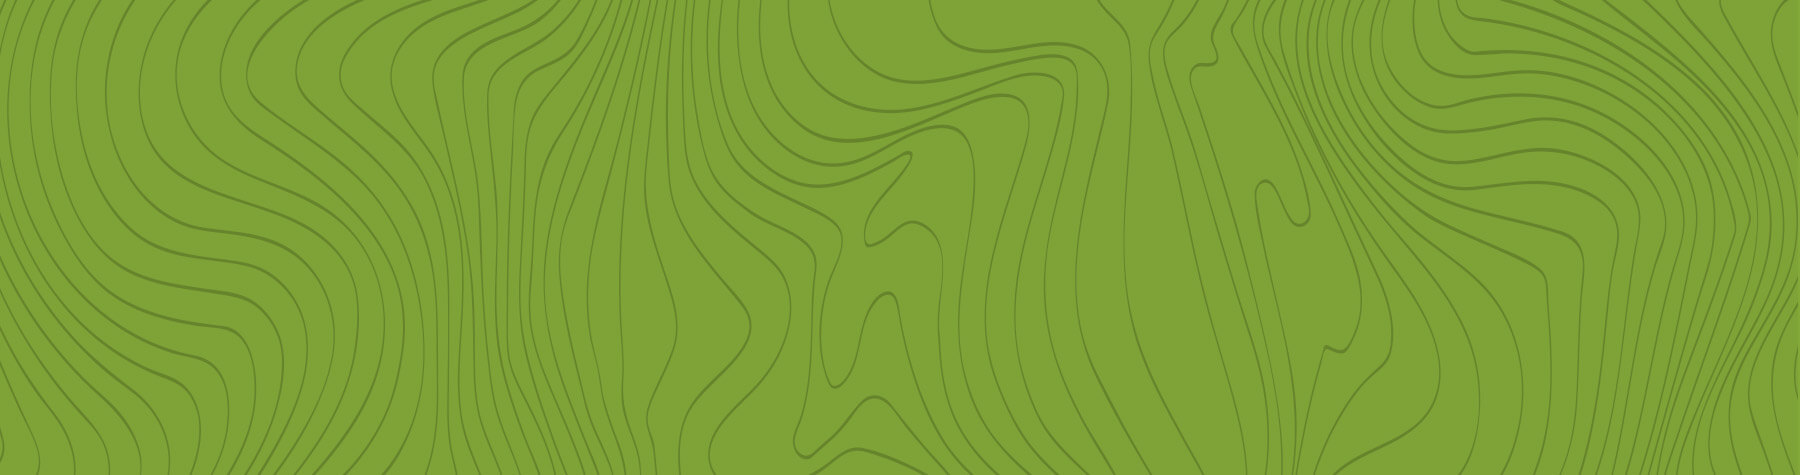 Fond vert avec des lignes